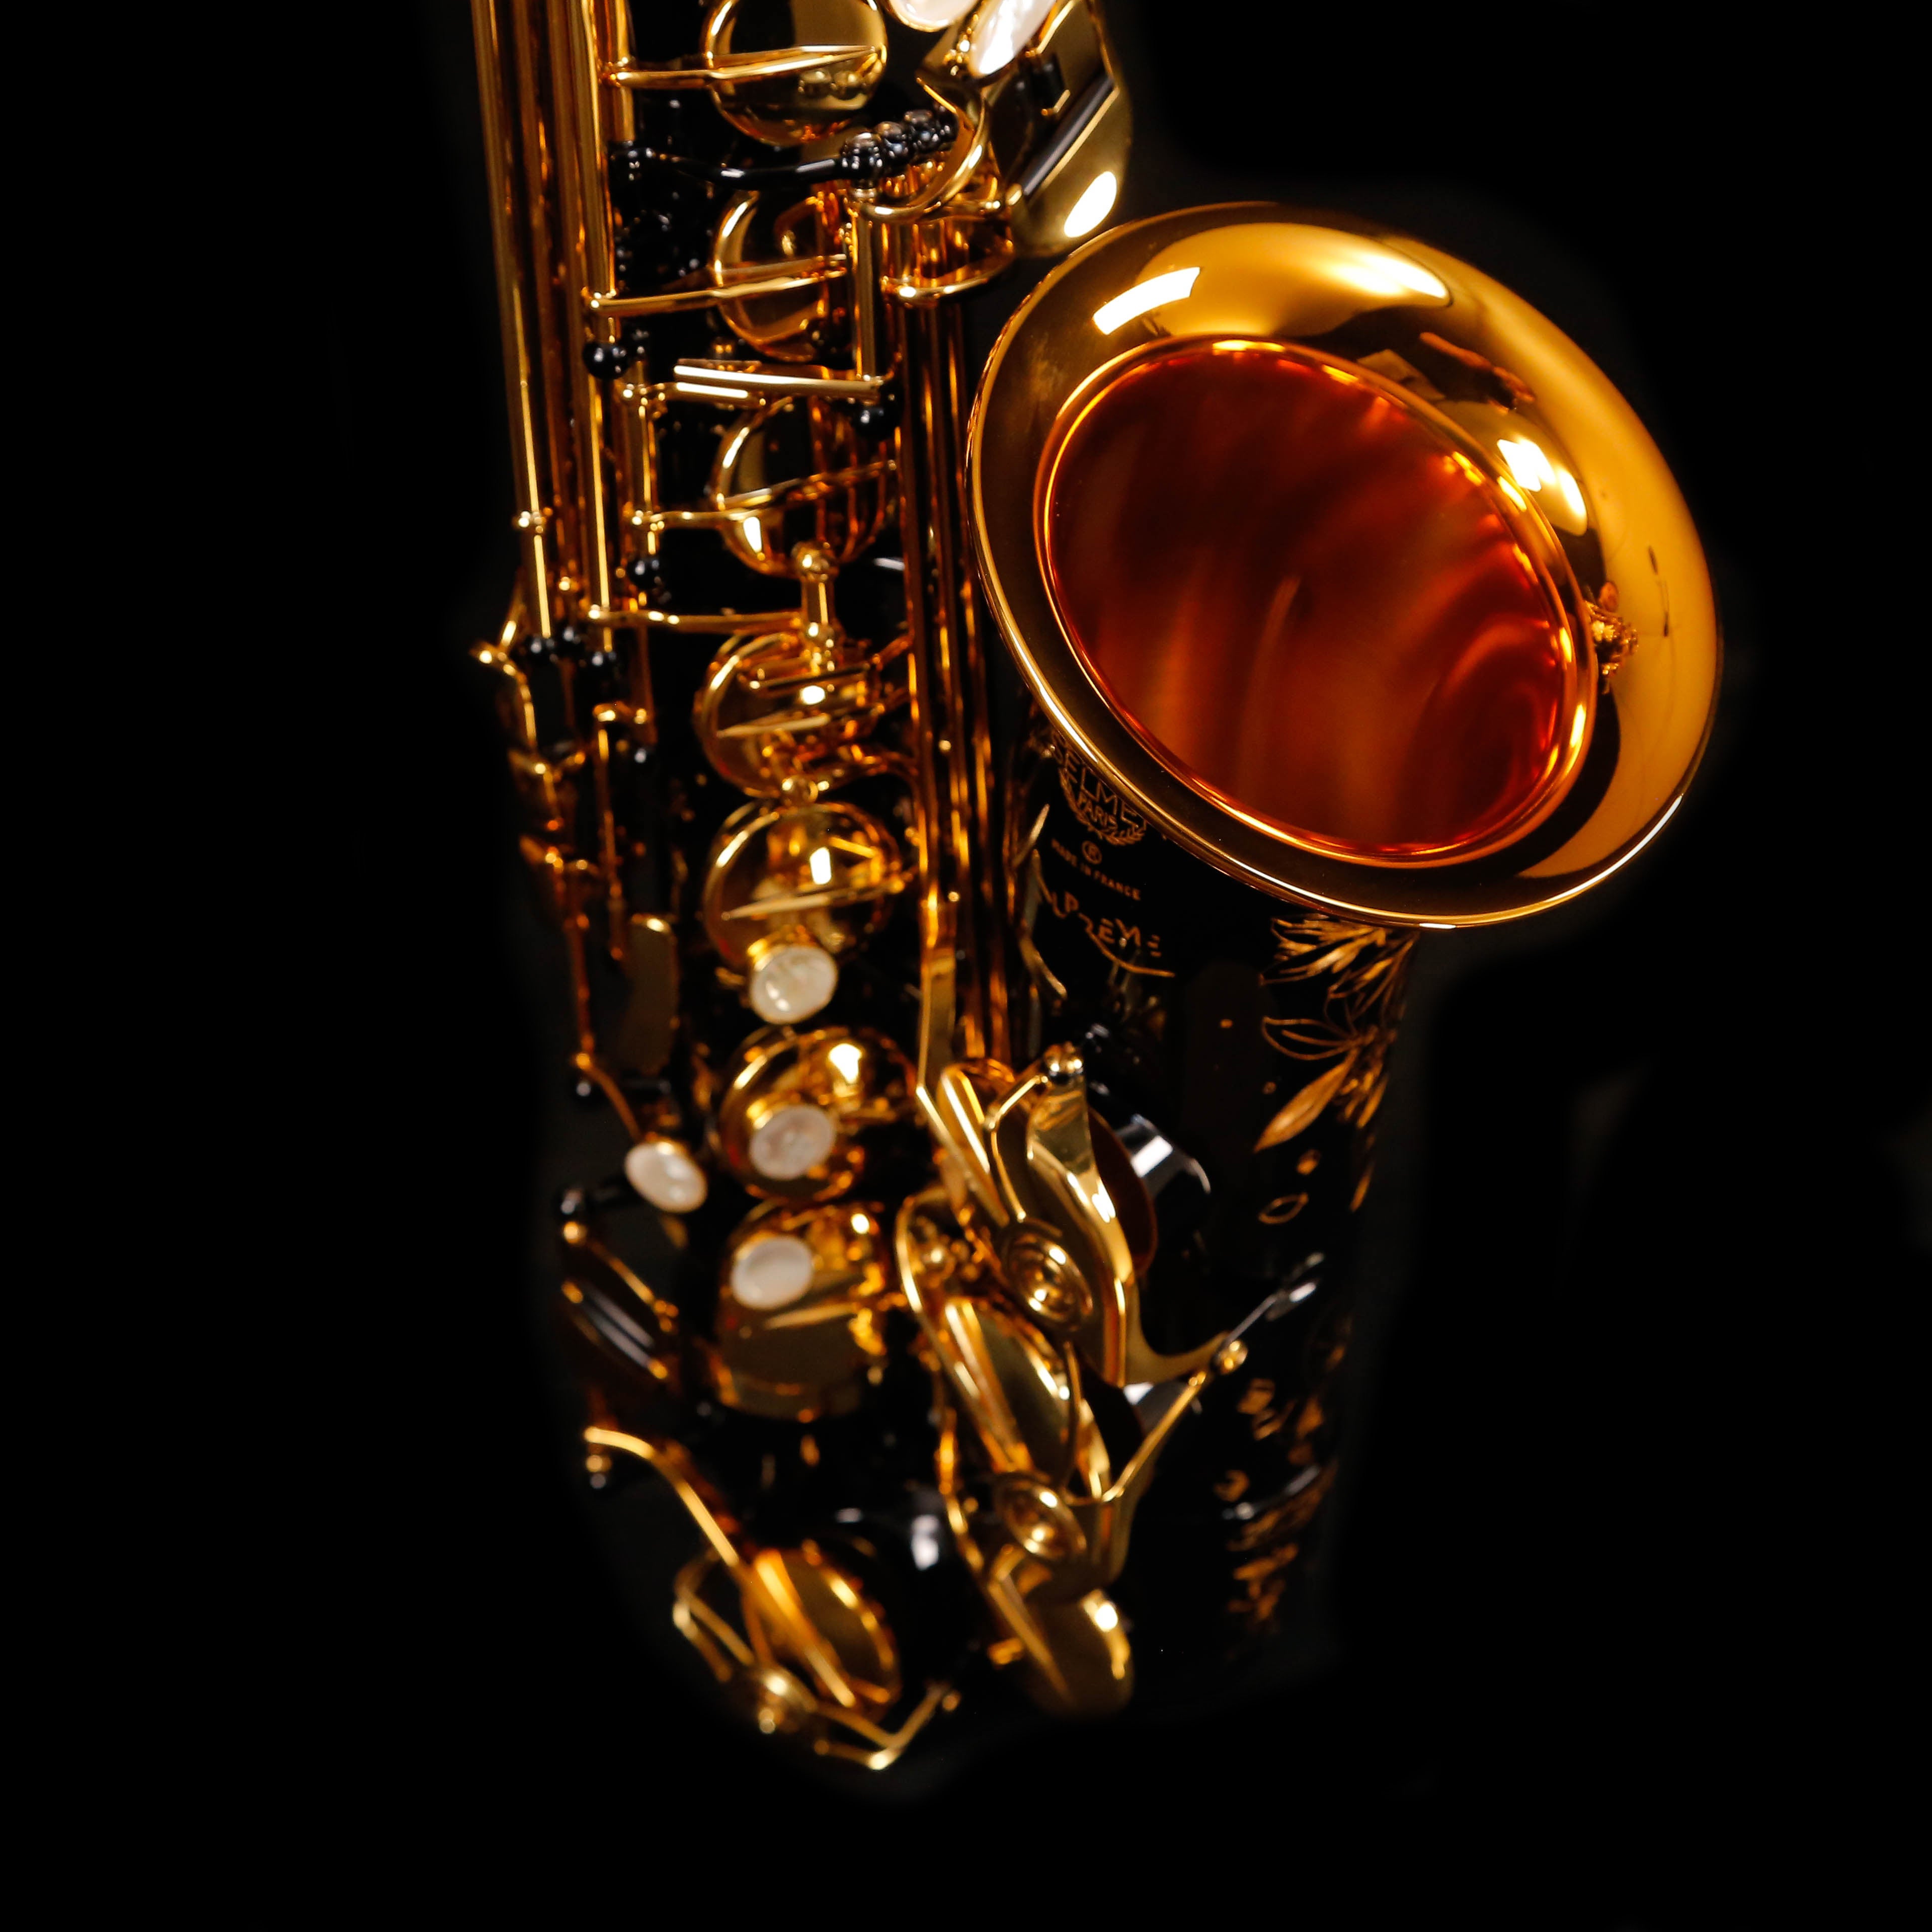 Selmer Métal Classic C* - Bec saxophone alto métal nu